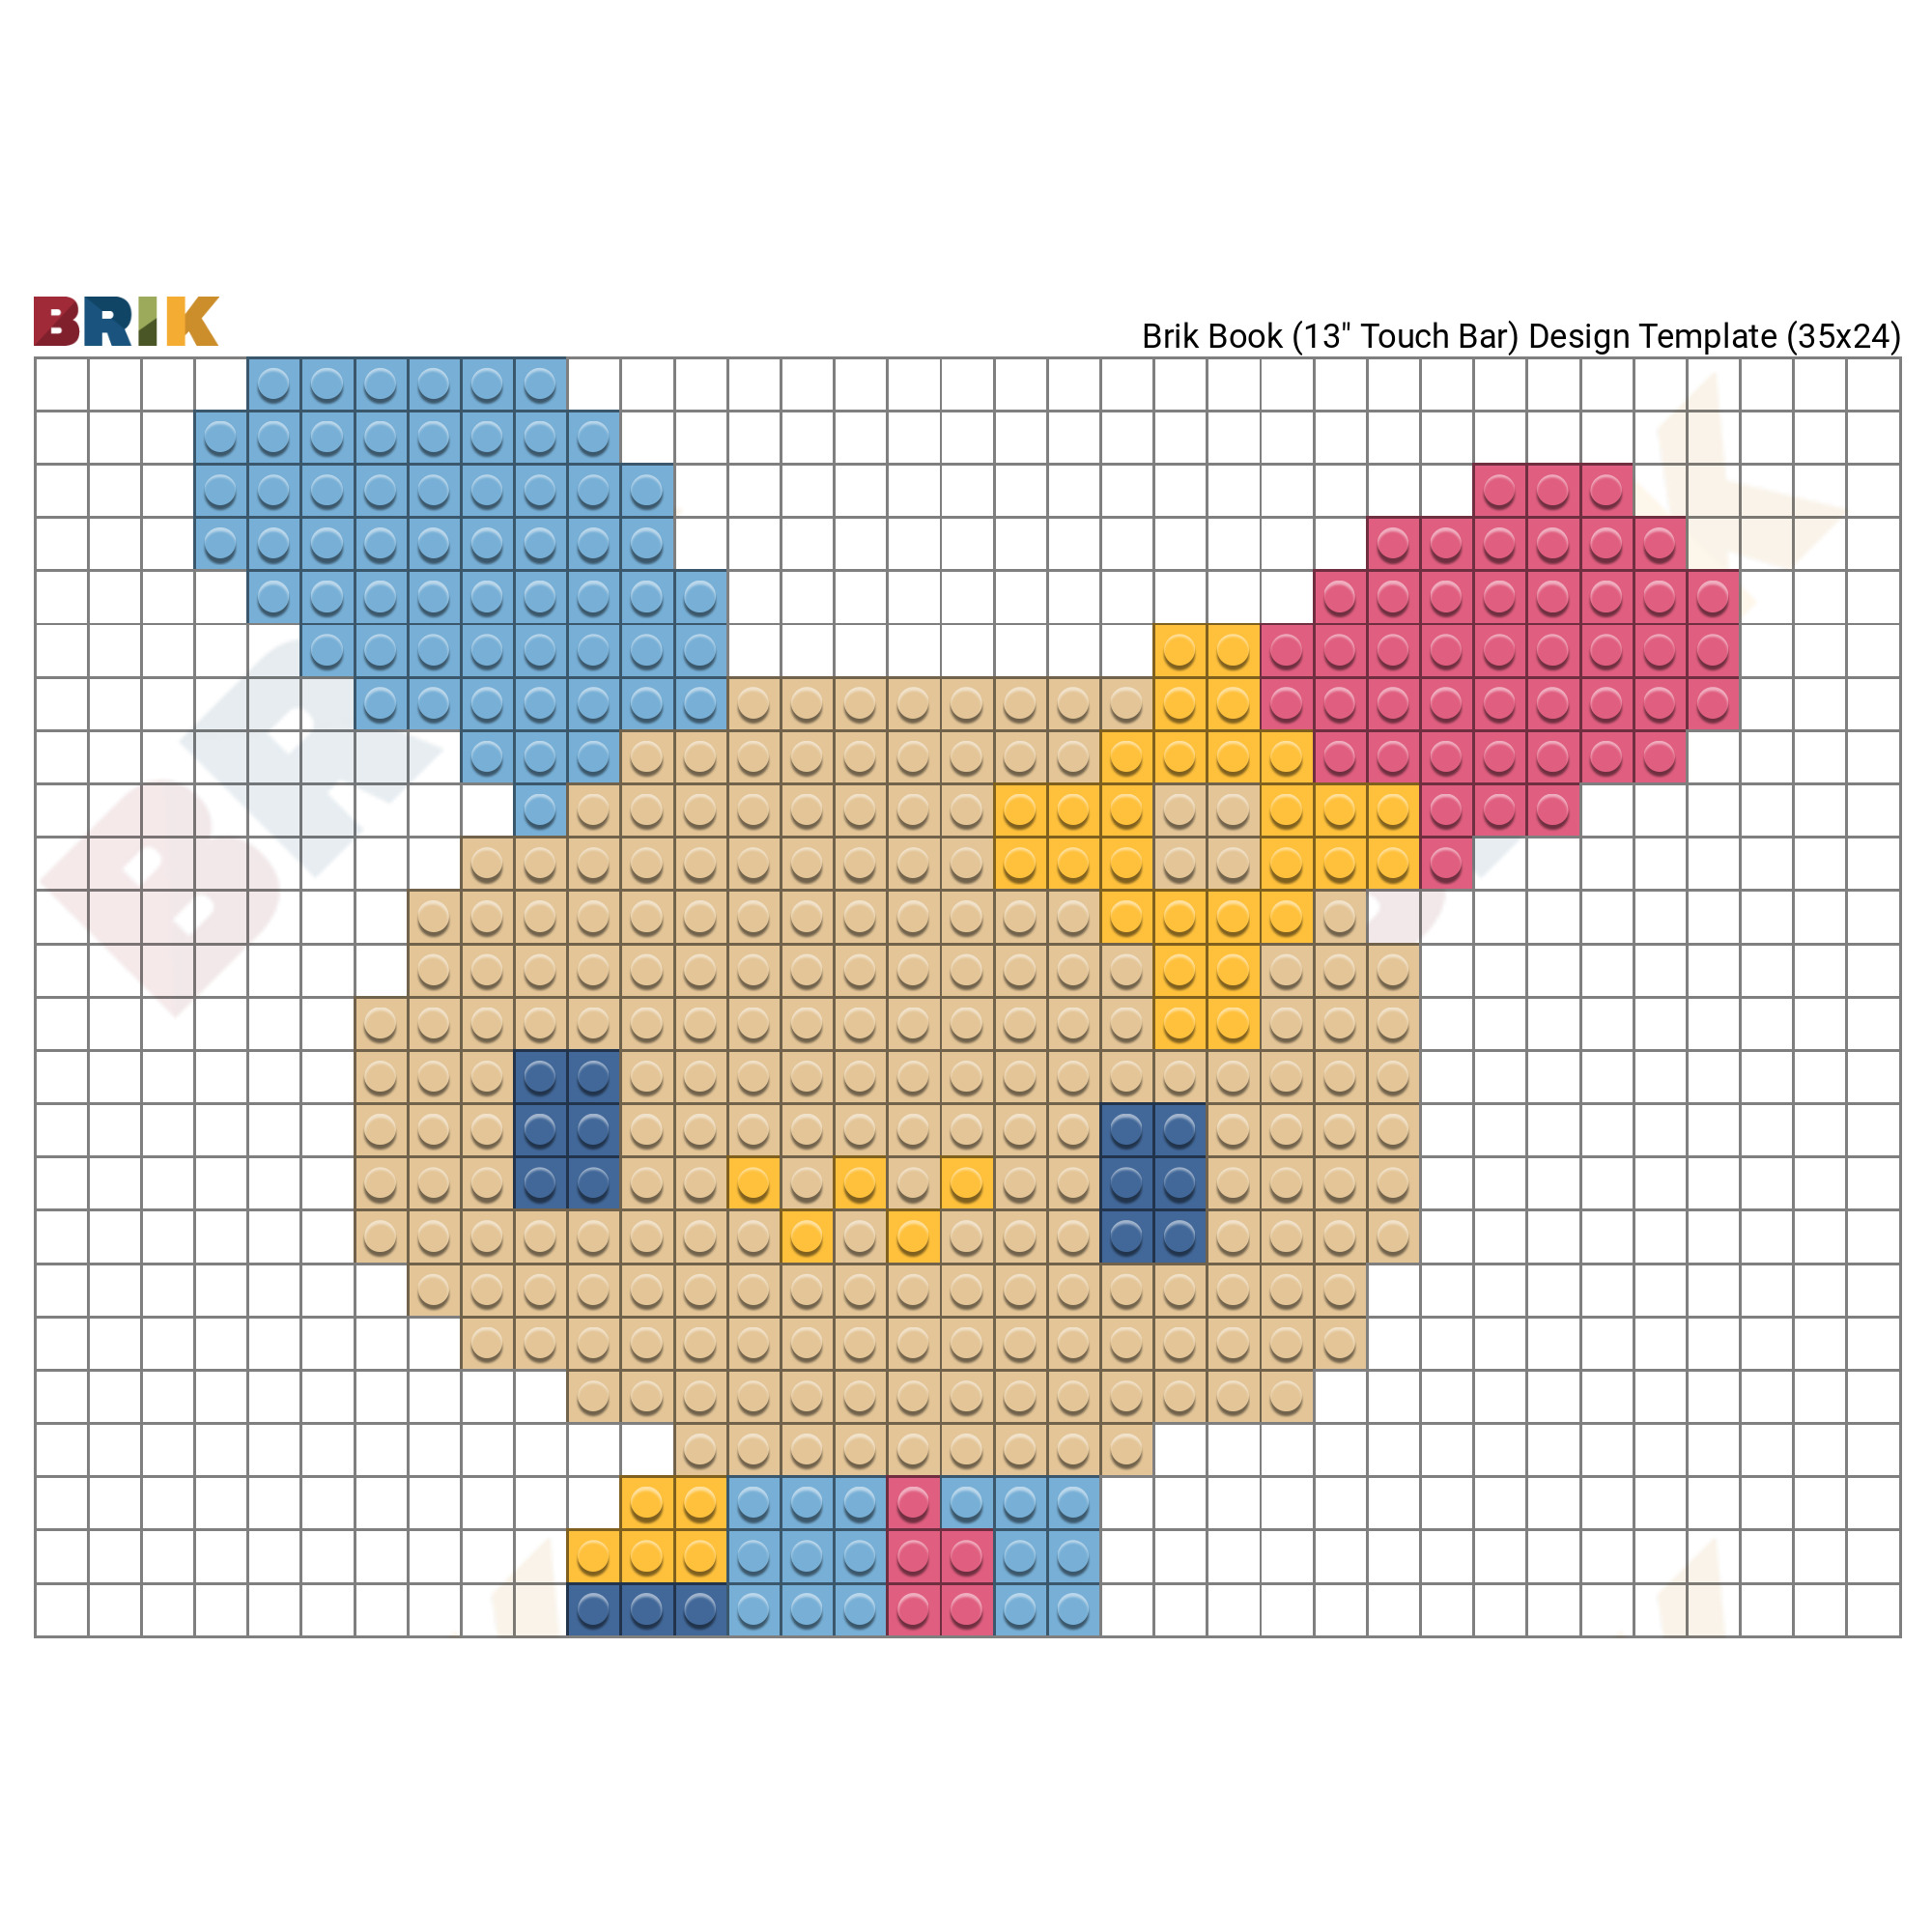 9 EVEE ideas  pixel art pokemon, 32x32 pixel art grid, pixel art grid